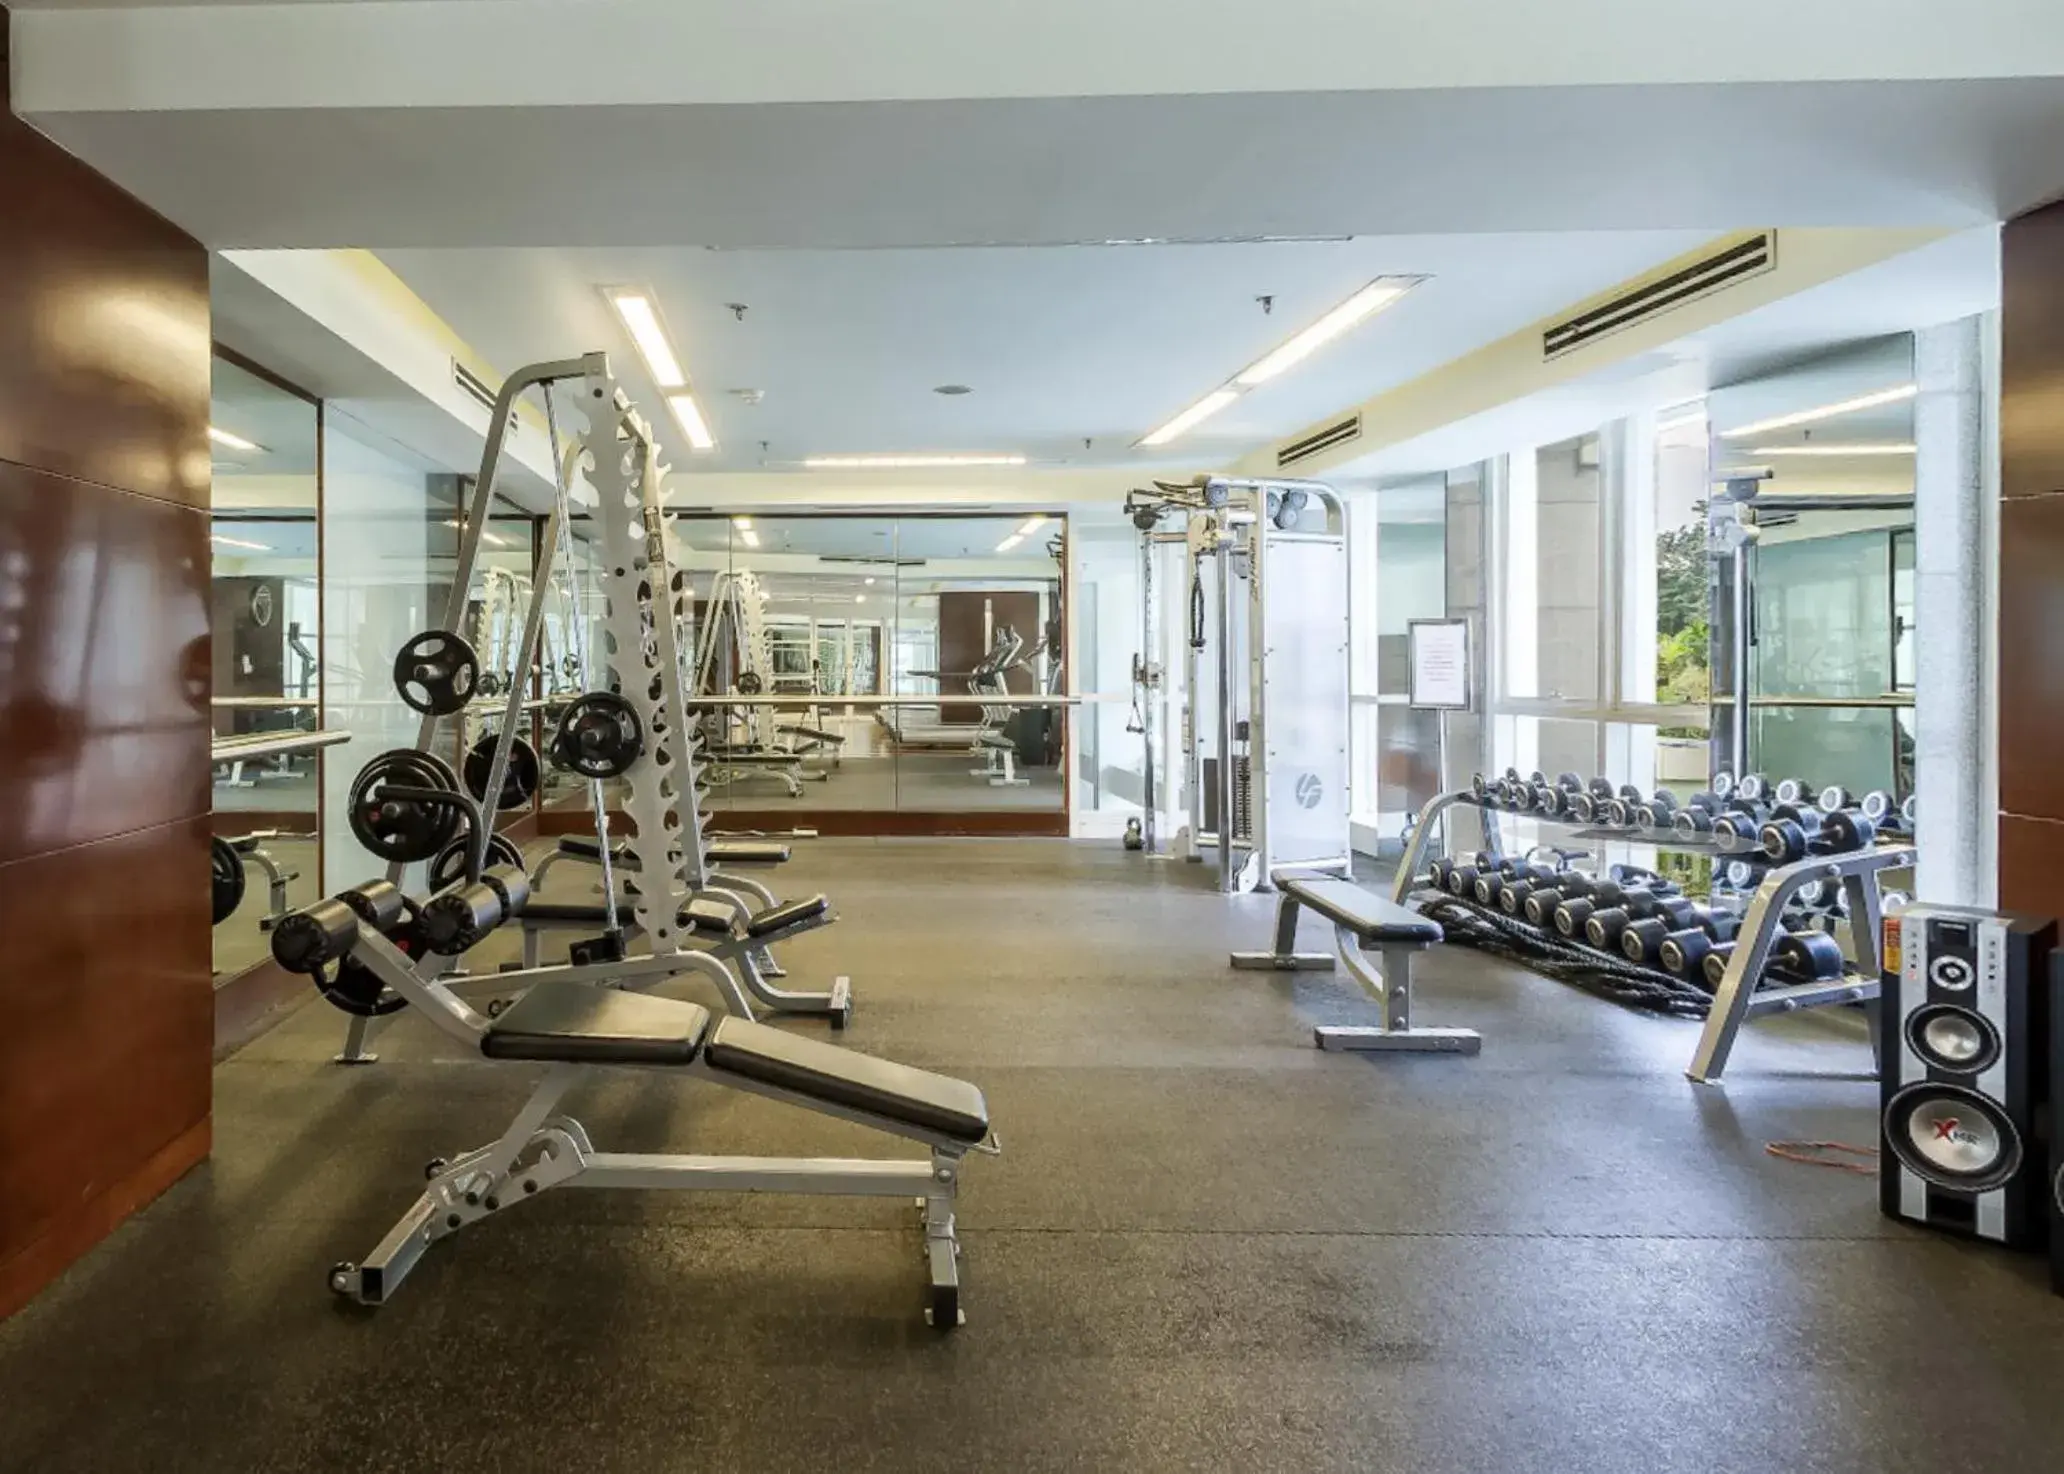 Fitness centre/facilities, Fitness Center/Facilities in Fraser Residence Sudirman, Jakarta